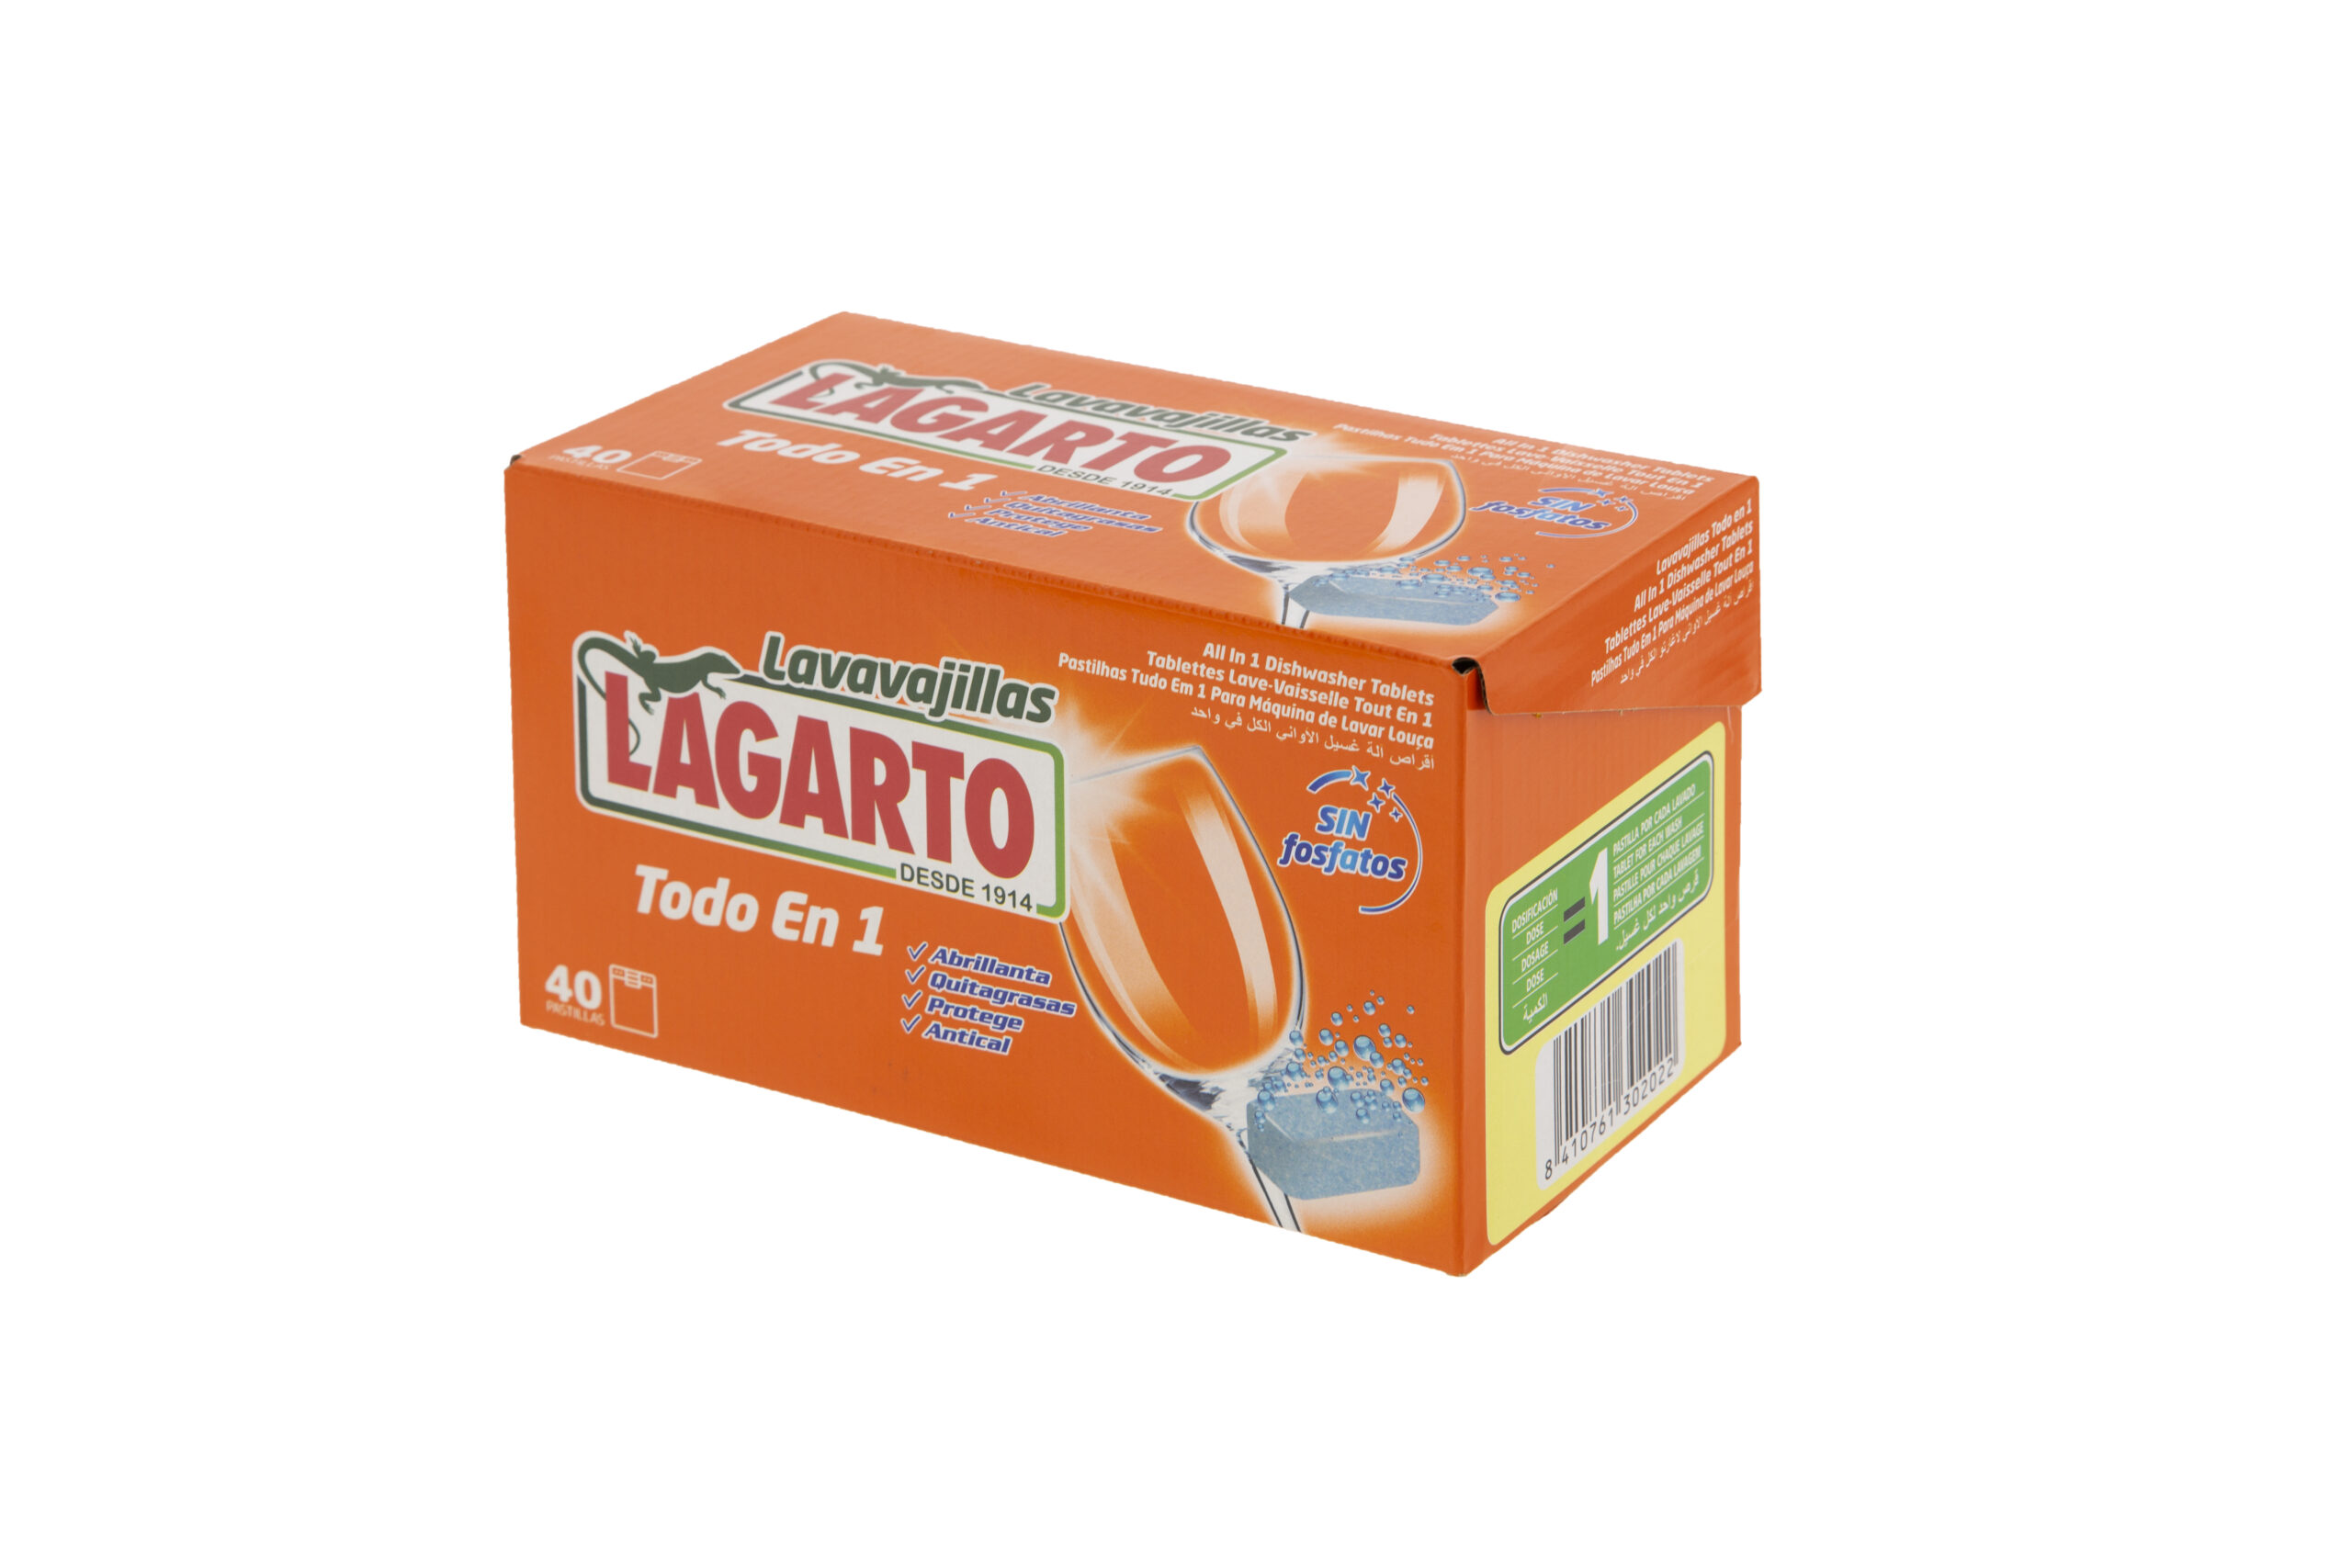 Detergente liquido al jabón 40 lavados - Lagarto